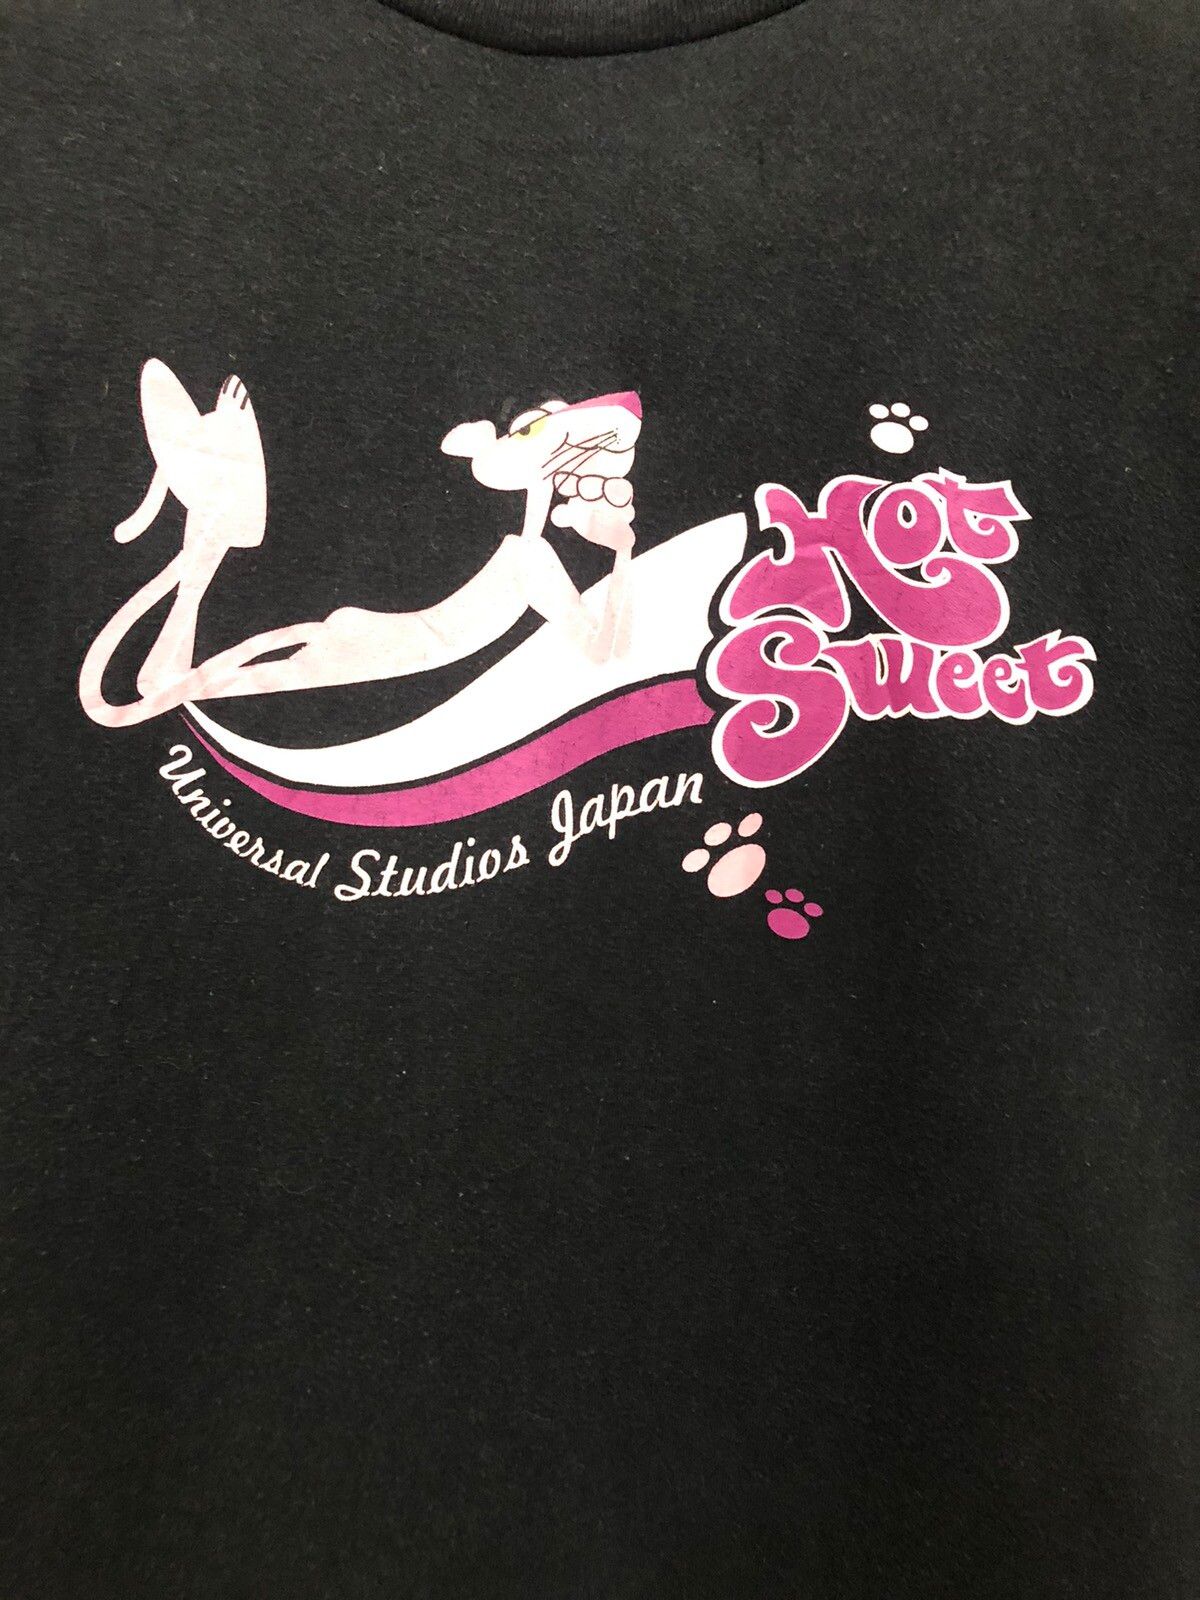 Japanese Brand Vintage Pink Panther Hot Sweet Japan Made TShirt Size US S / EU 44-46 / 1 - 3 Thumbnail